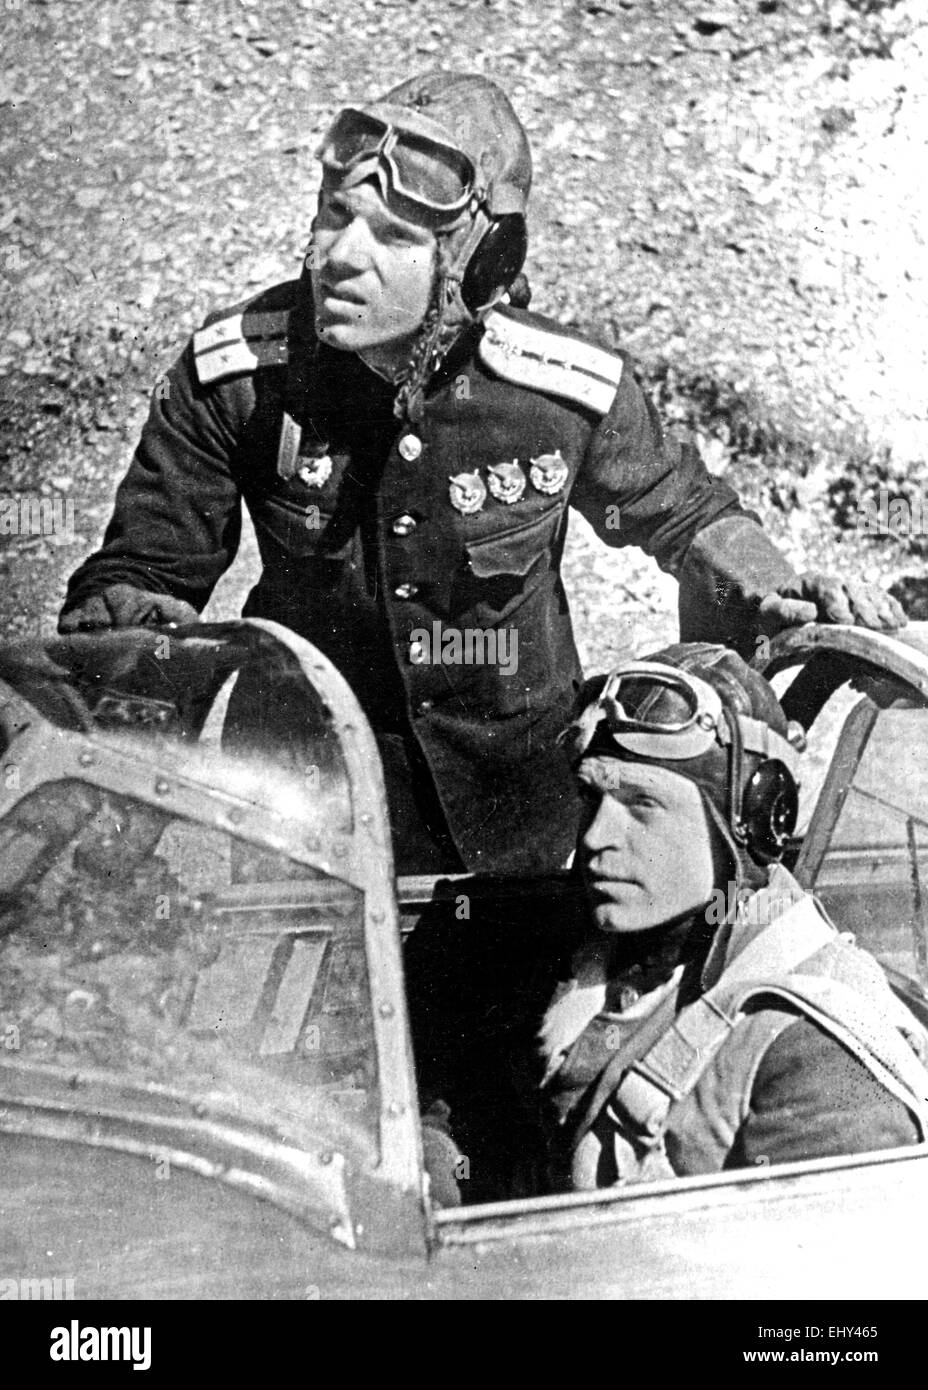 SOWJETISCHE Luft-Asse WW2 die ursprüngliche Bildunterschrift lautet:  'Wachen Kapitän G. Matwejew (sitzend), des Schwarzen Meeres Air Arms (mit)  wachen Kapitän M. Kologrivov'. Ca. 1944 Stockfotografie - Alamy